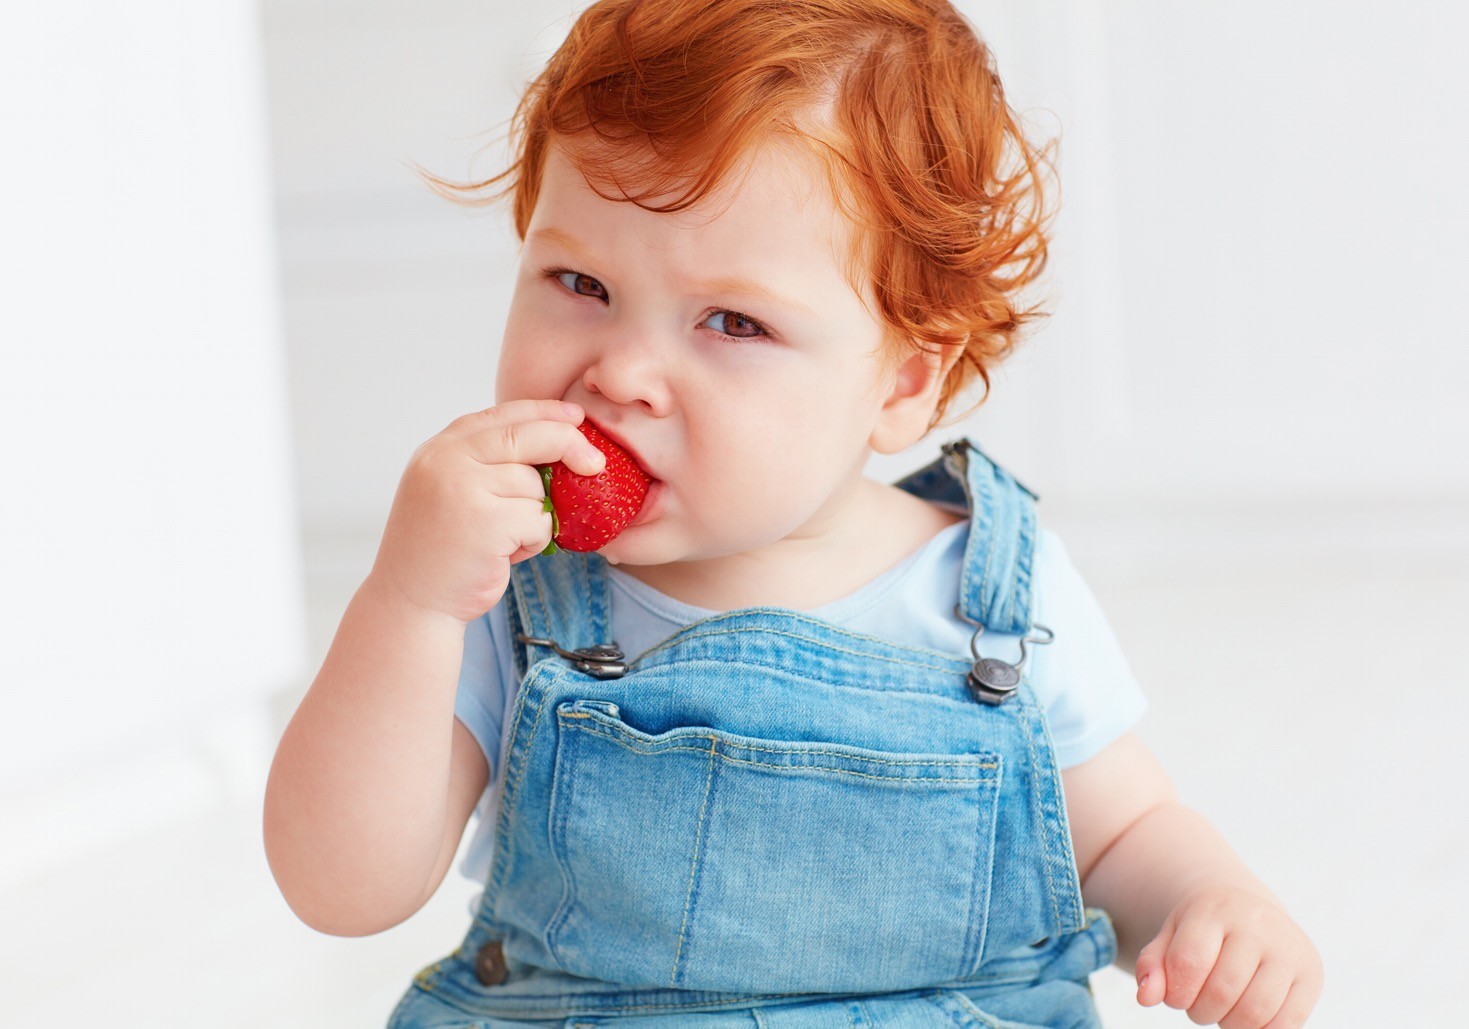 Dokazano je da odlaganje davanja bebi određenih namirnica koje su alergeni i neuvođenje u ishranu u periodu kada je beba stara između 6 i 12 meseci, zapravo povećava mogućnost da se alergija na tu hranu kasnije javi.